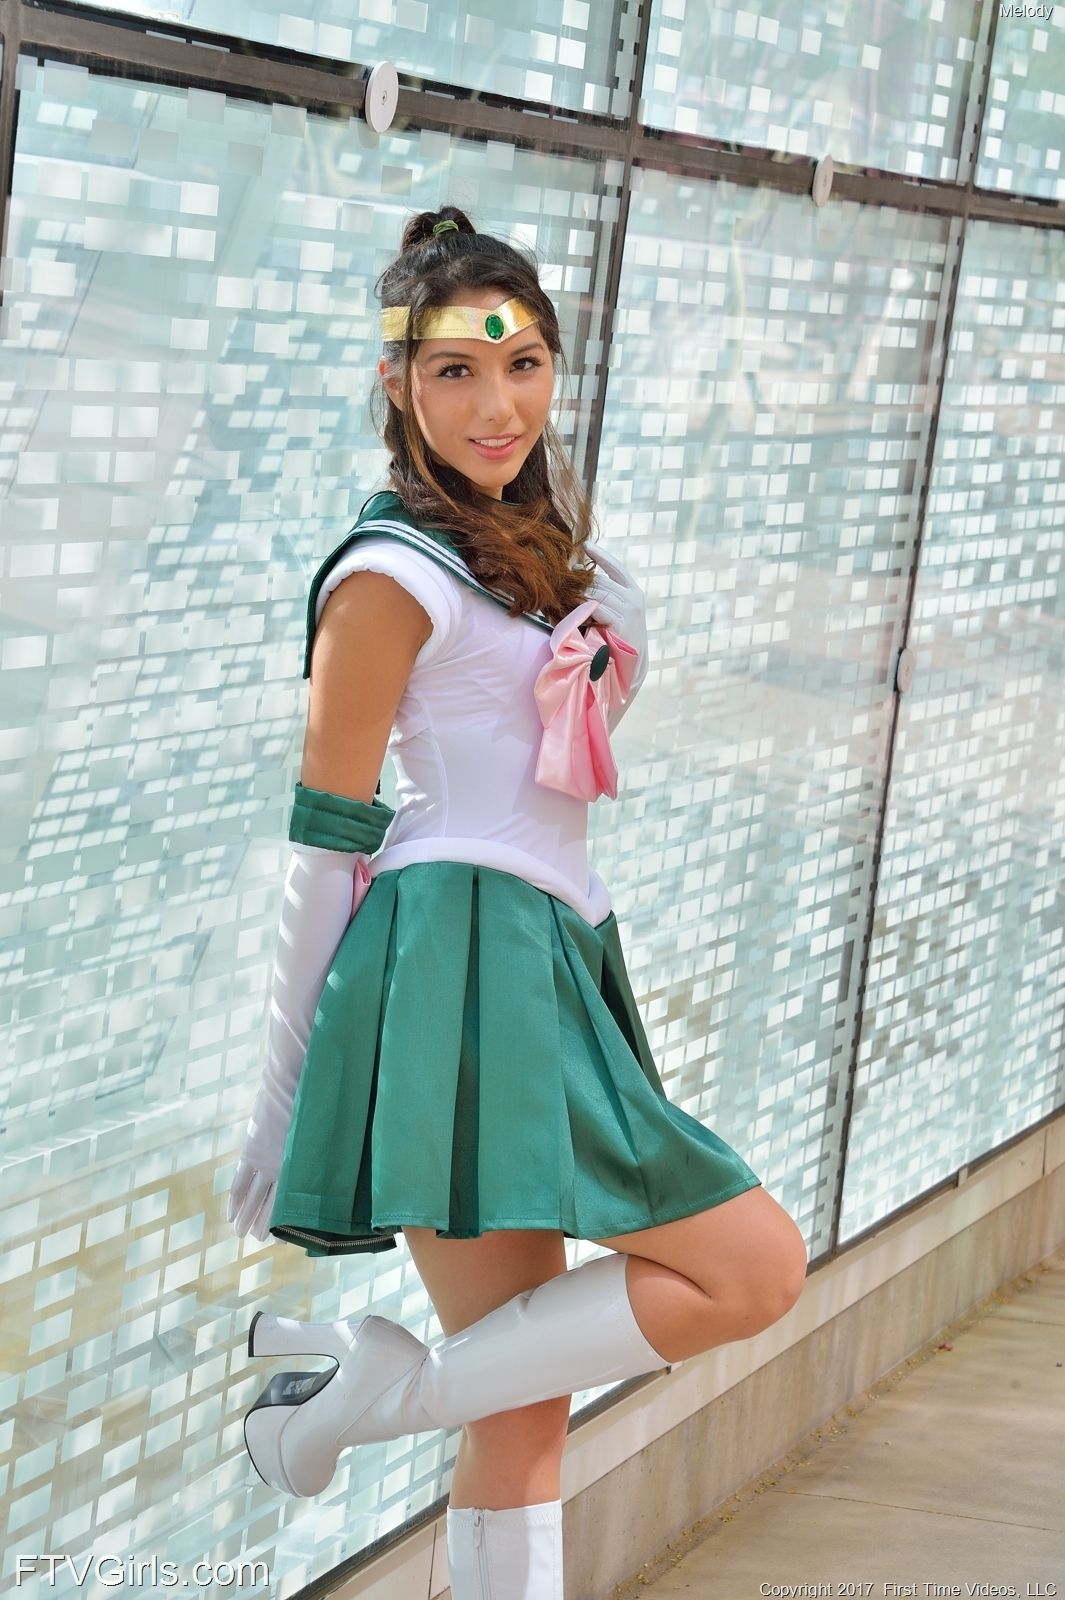 Melody Wylde as Sailor Jupiter 13